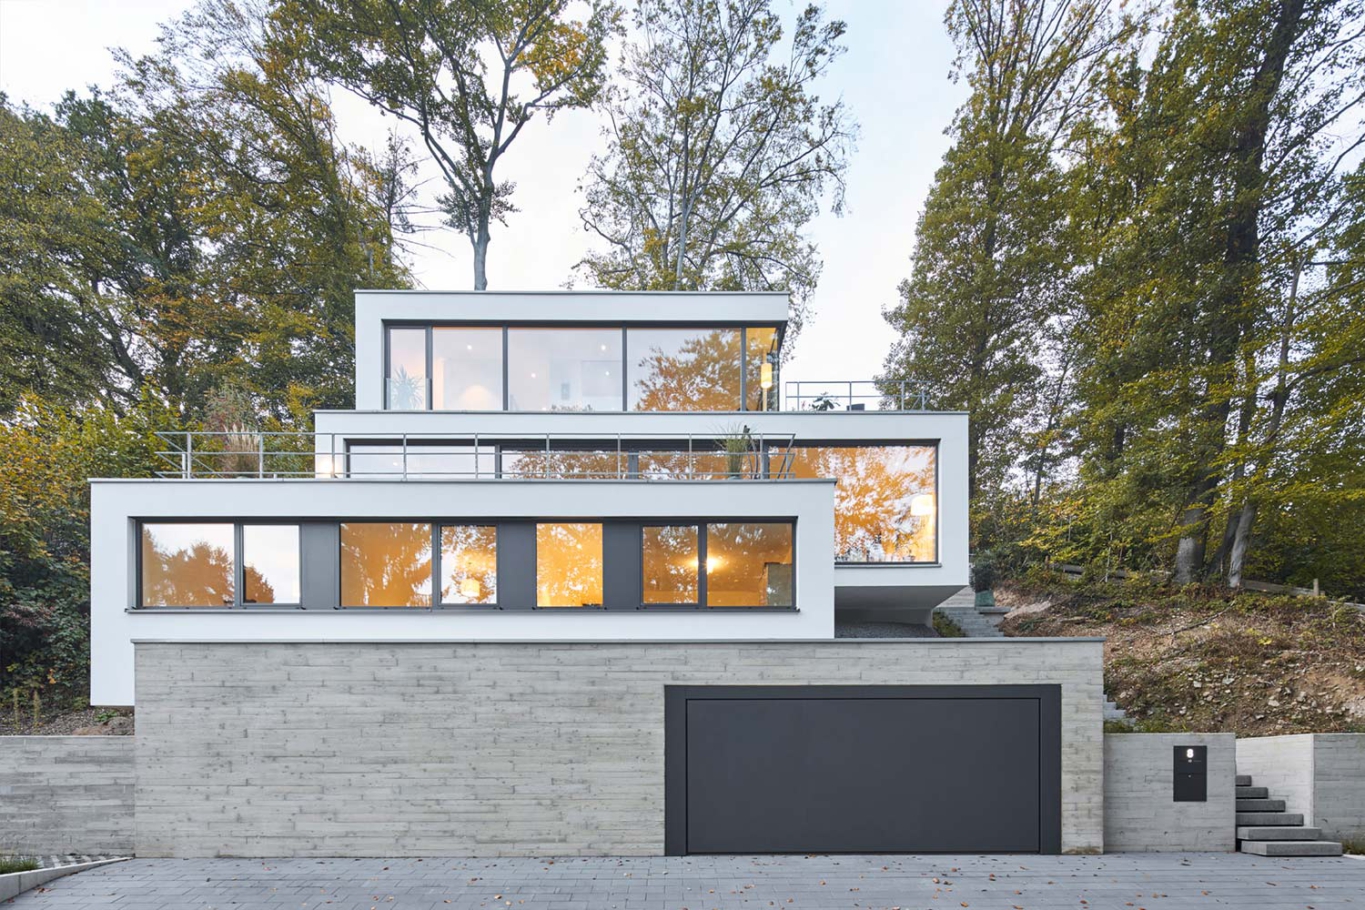 Architekturfotografie Lioba Schneider: Ein weisses Einfamilienhaus mit Flachdach und in mehreren Terrassen schmiegt sich an den Hang im Wald.